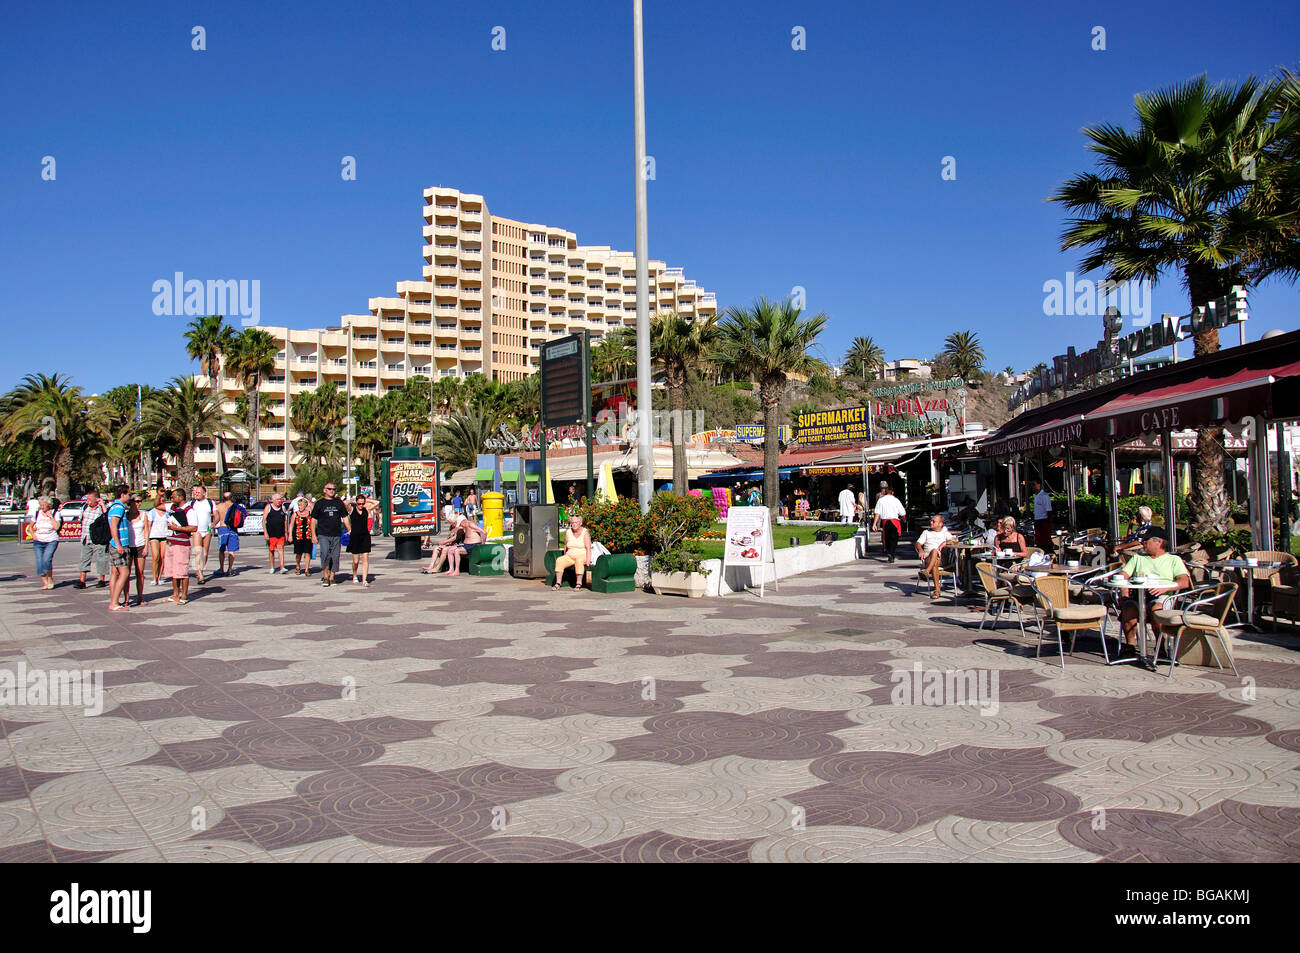 Paseo playa del ingles fotografías e imágenes de alta resolución - Alamy